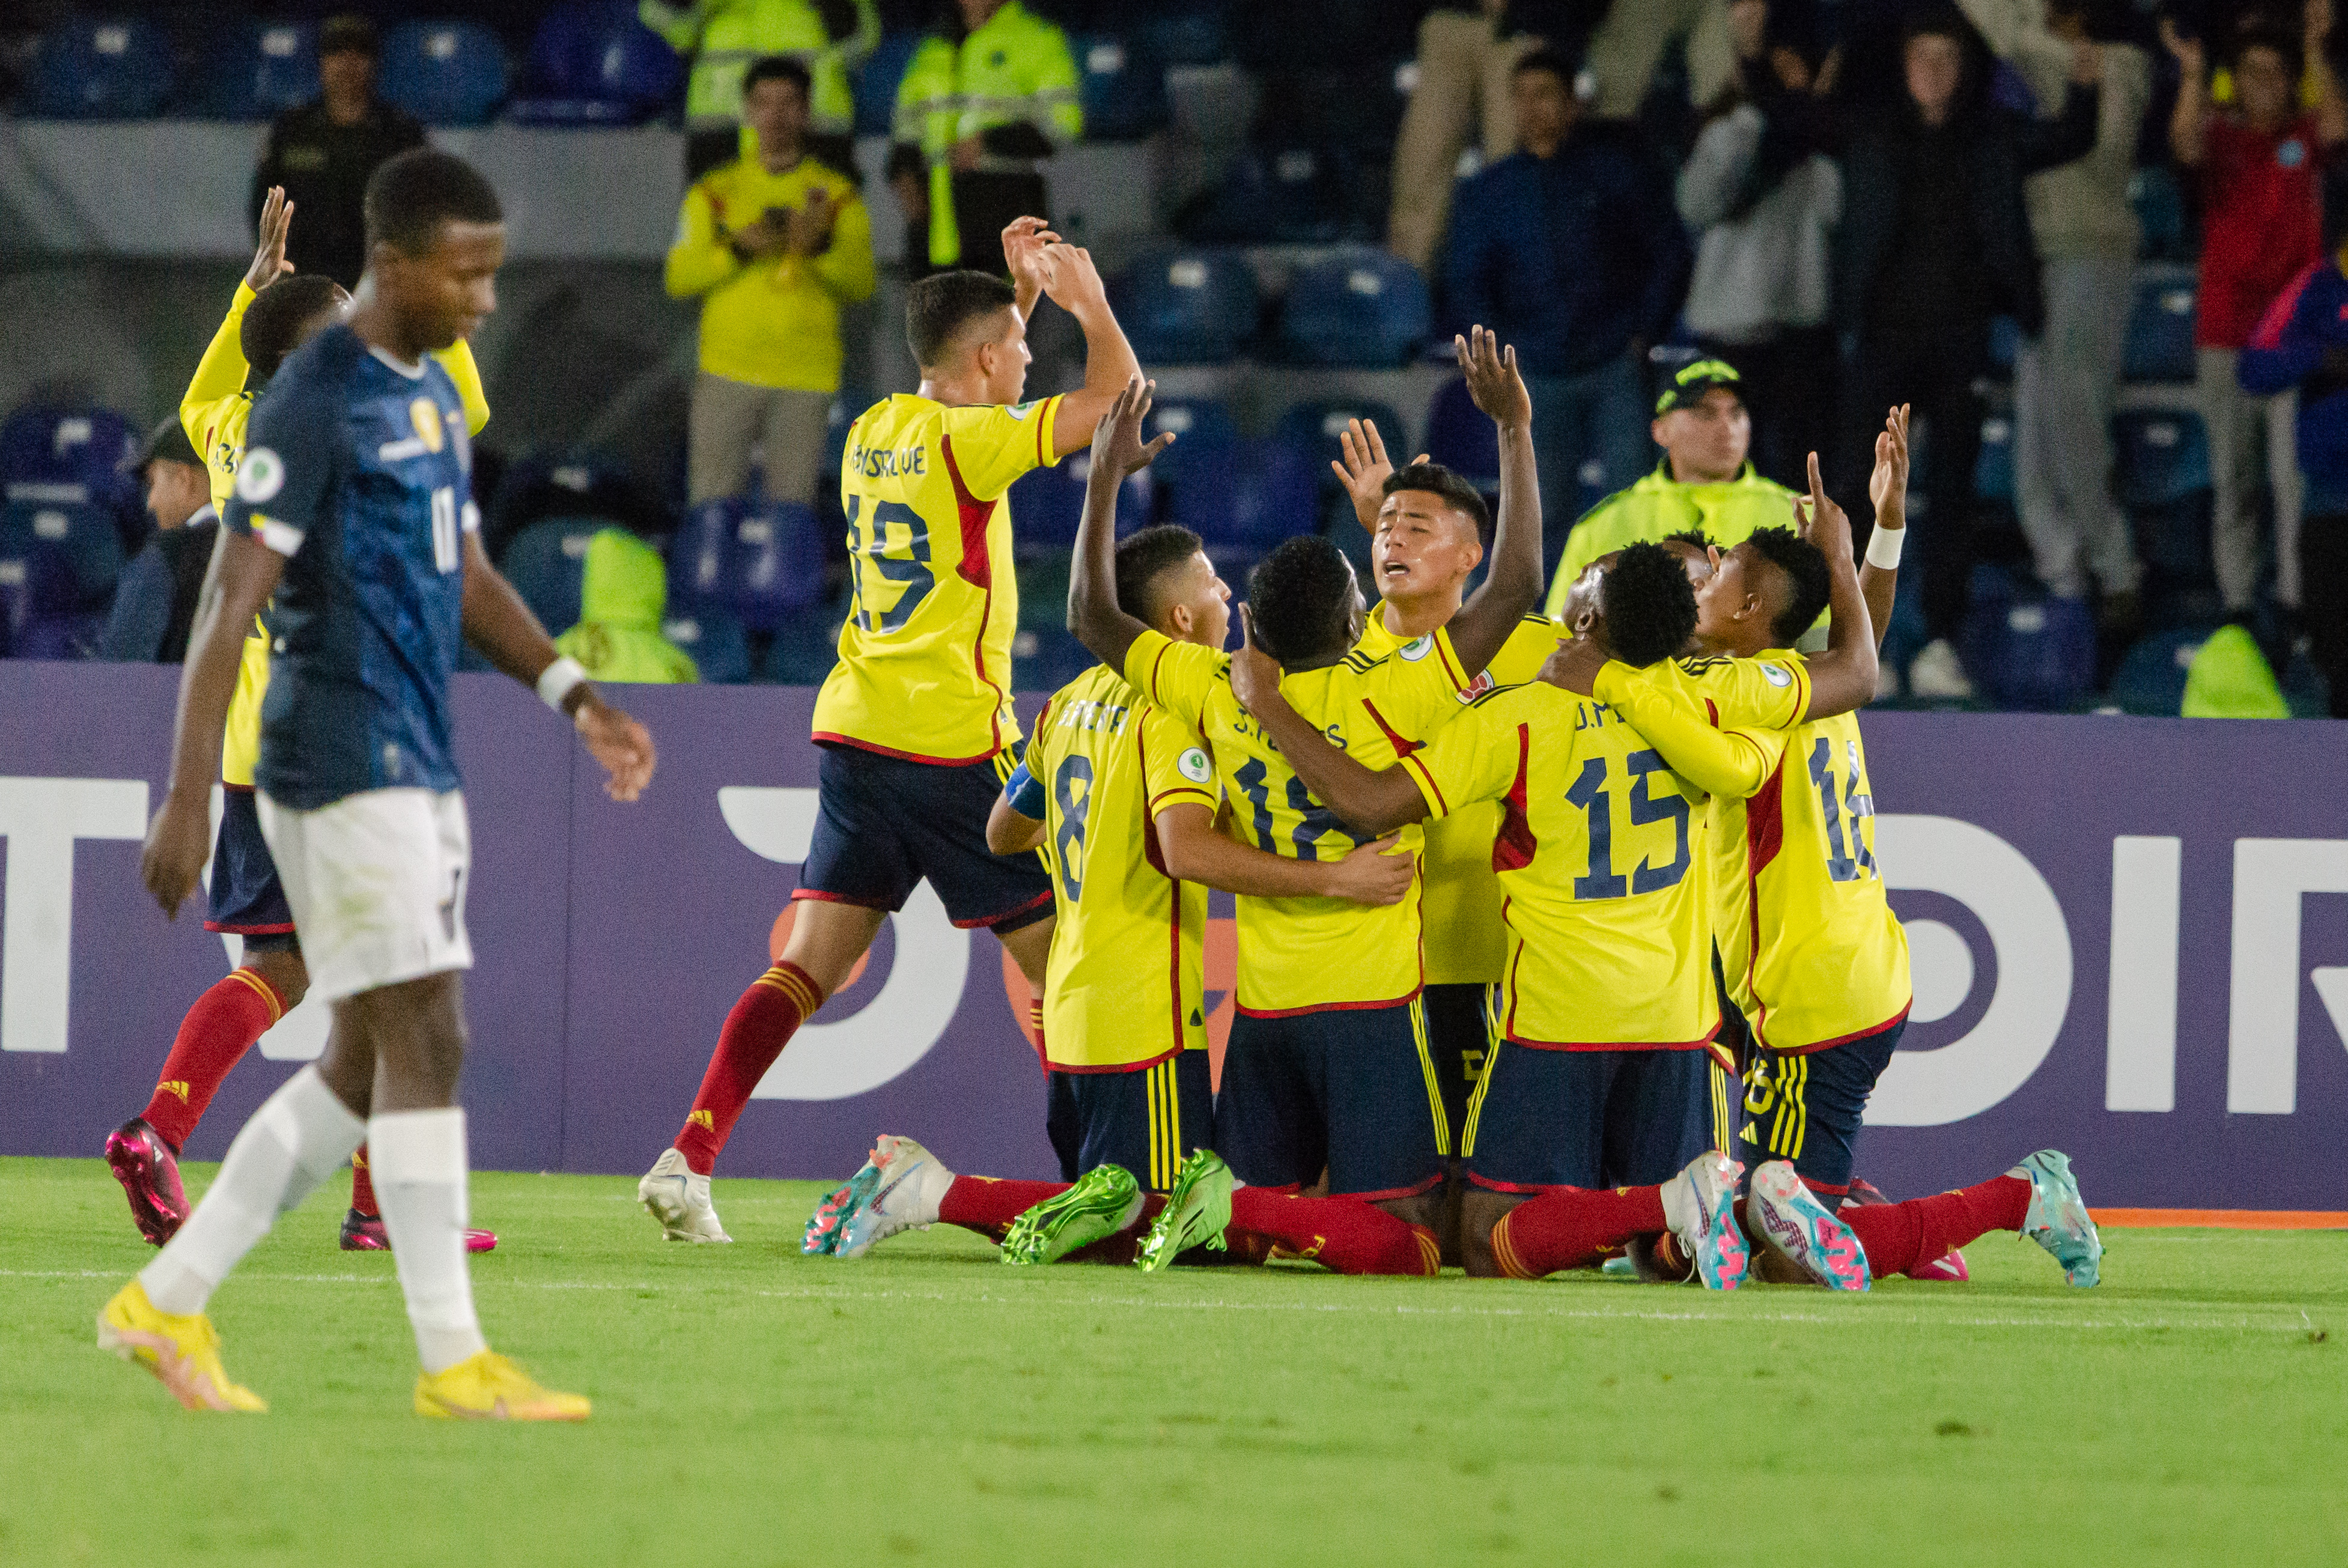 Colombia vs. Ecuador EN VIVO: ya se juega el segundo tiempo en el Campín, los cafeteros ganan 1-0 por el hexagonal final del Sudamericano sub-20